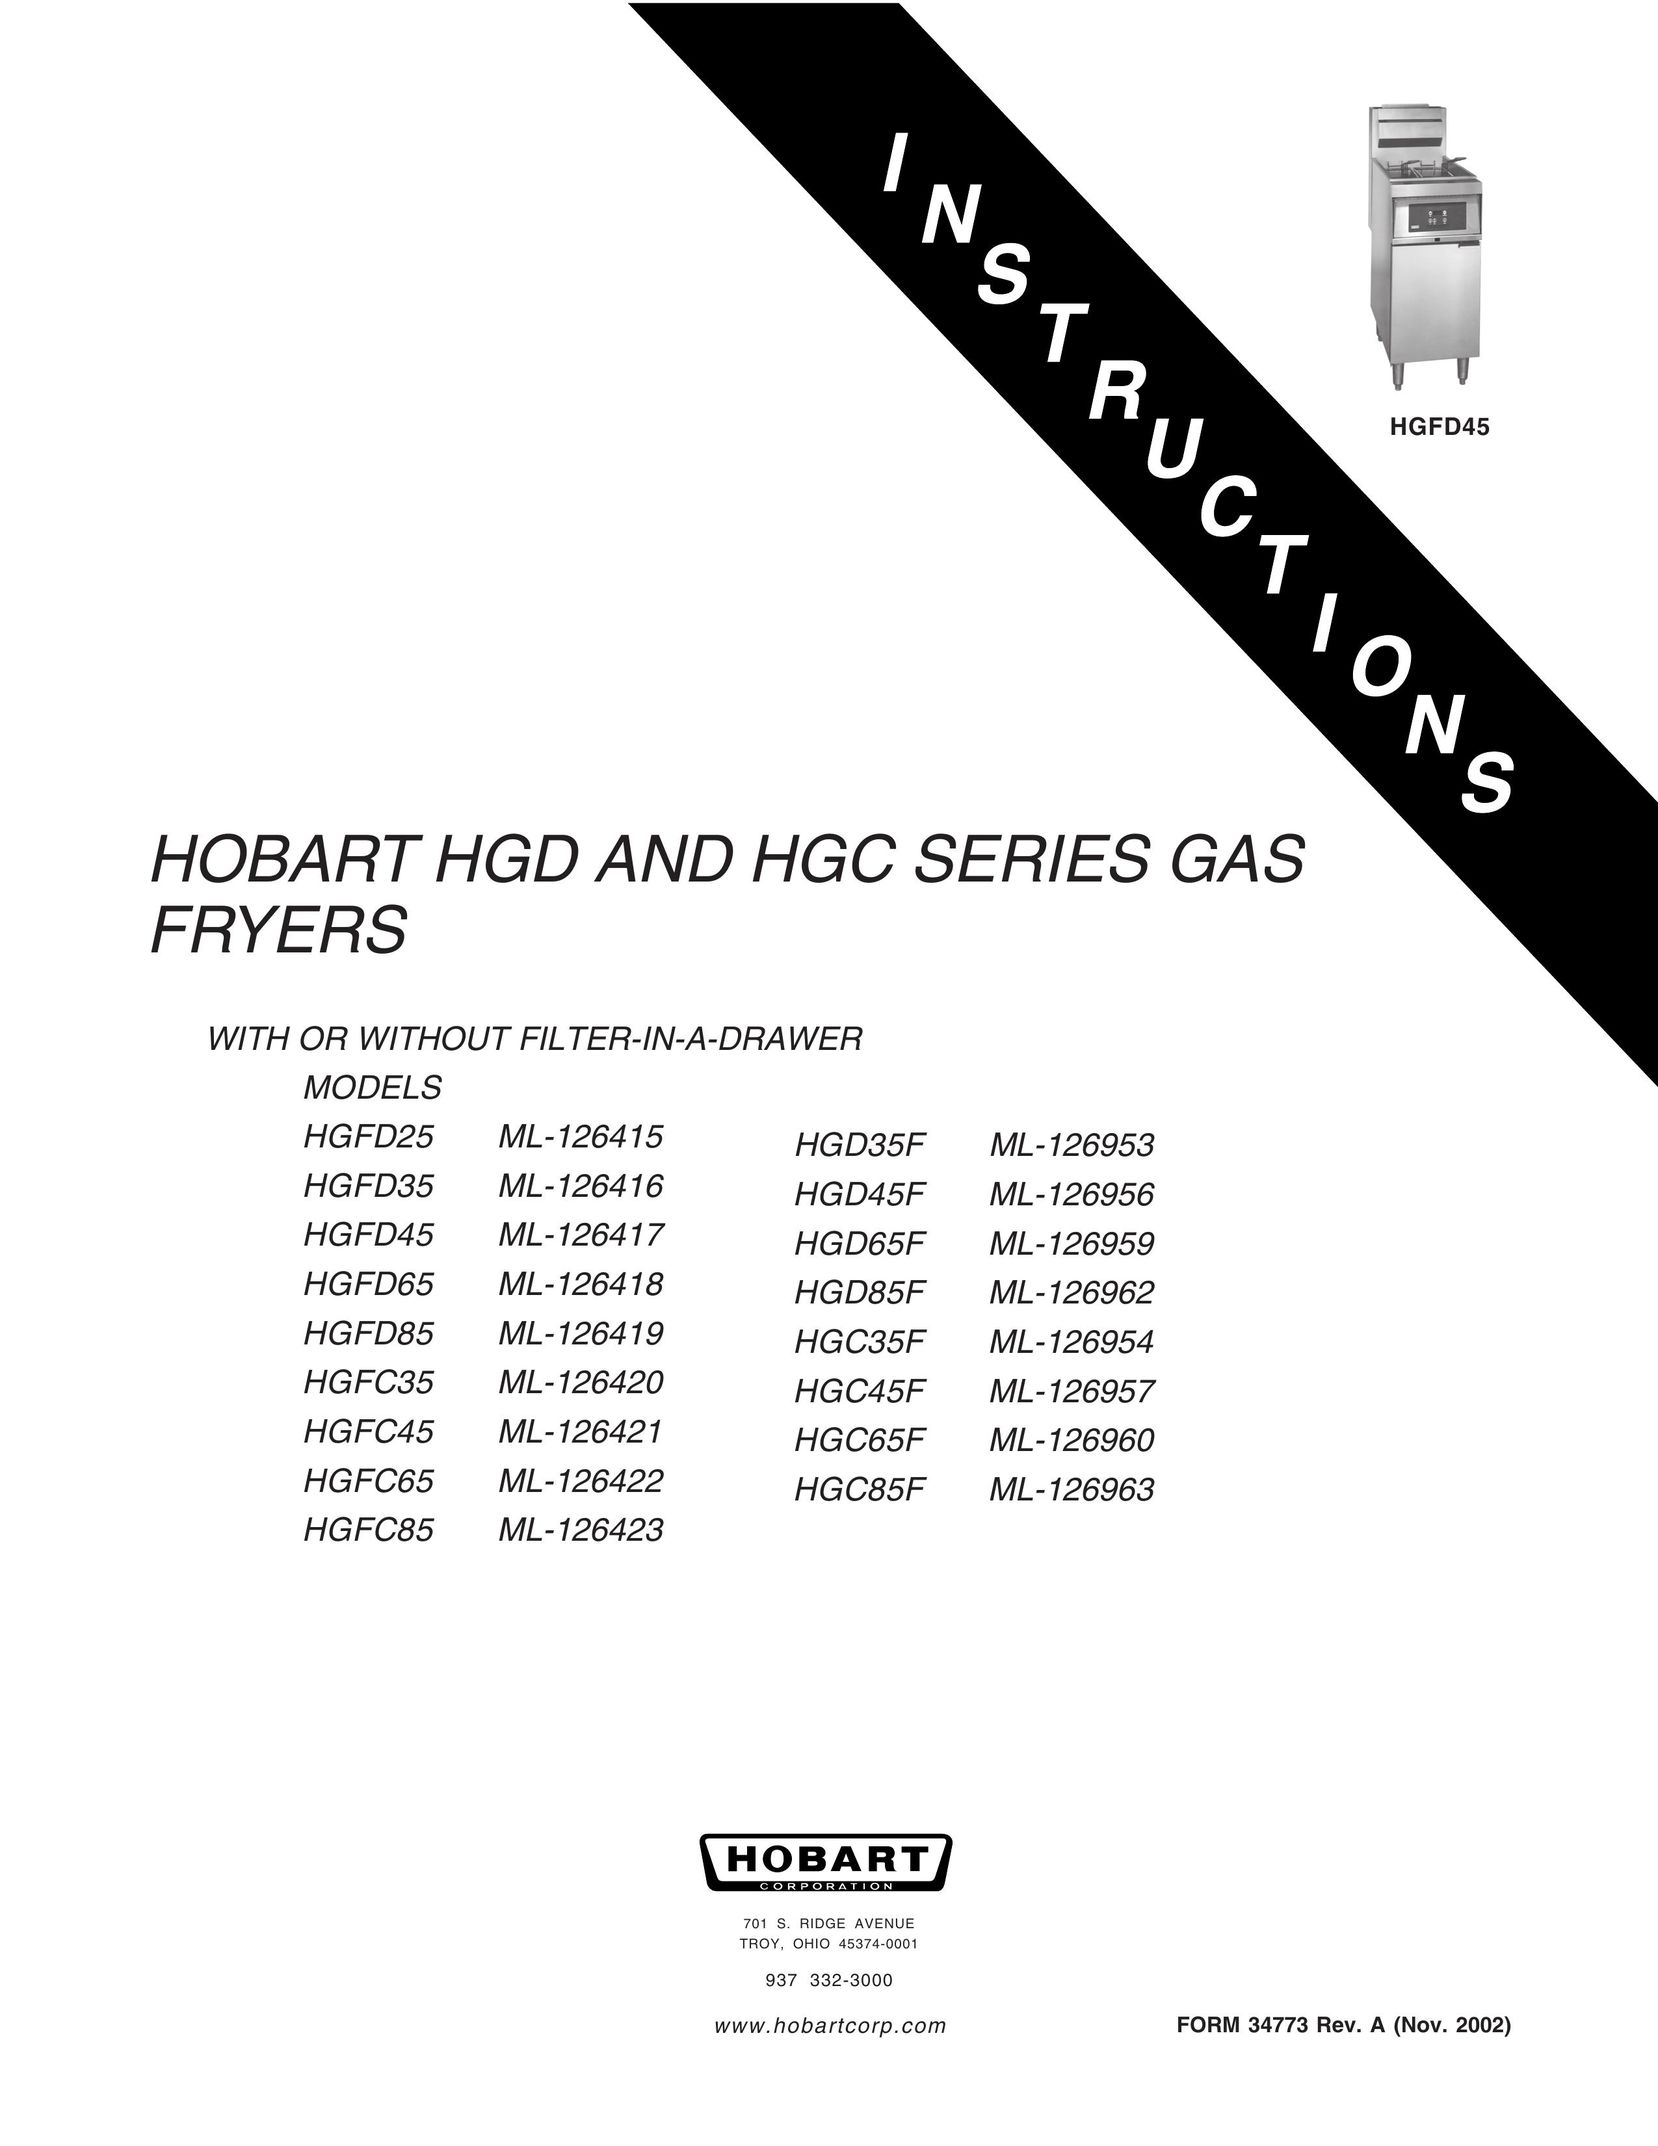 Hobart HGD35F Fryer User Manual